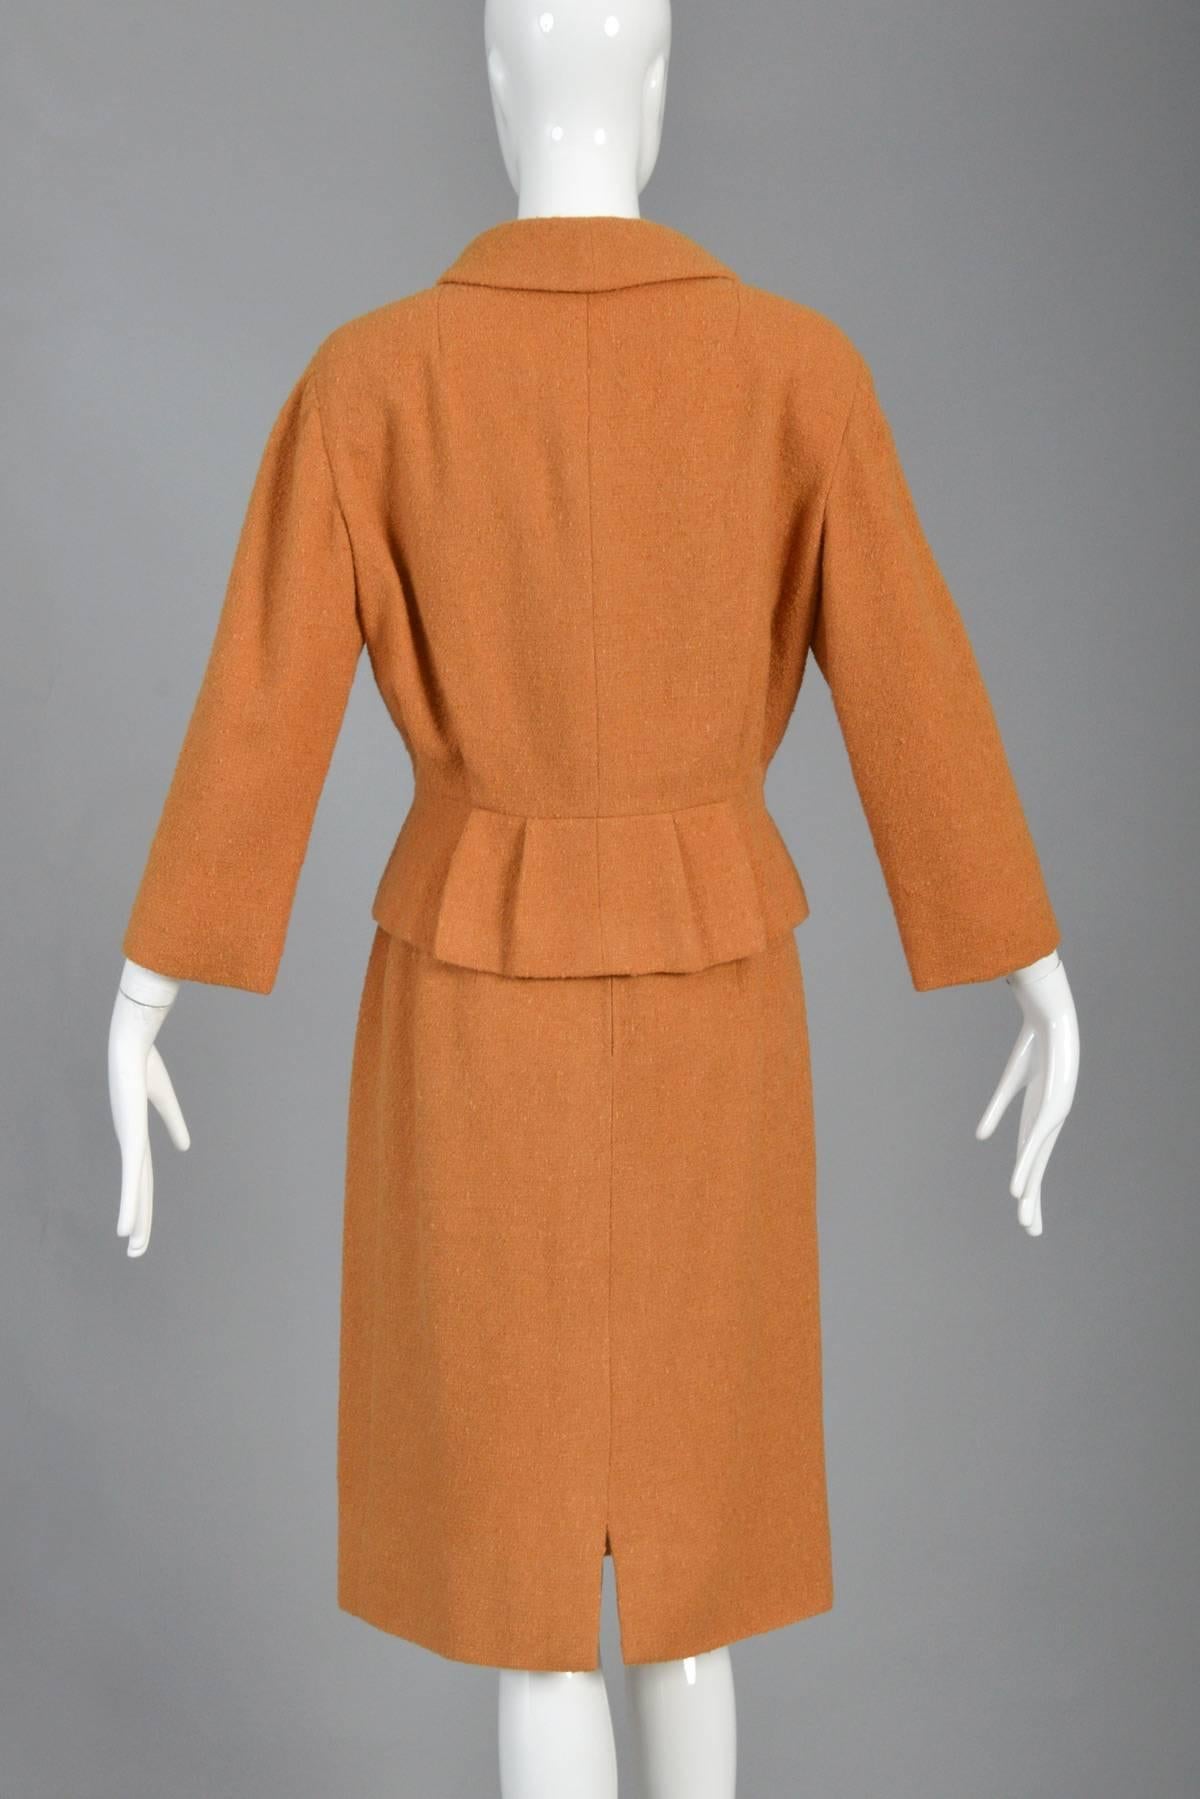 1960s Christian Dior Pumpkin Pleat Suit For Sale 4